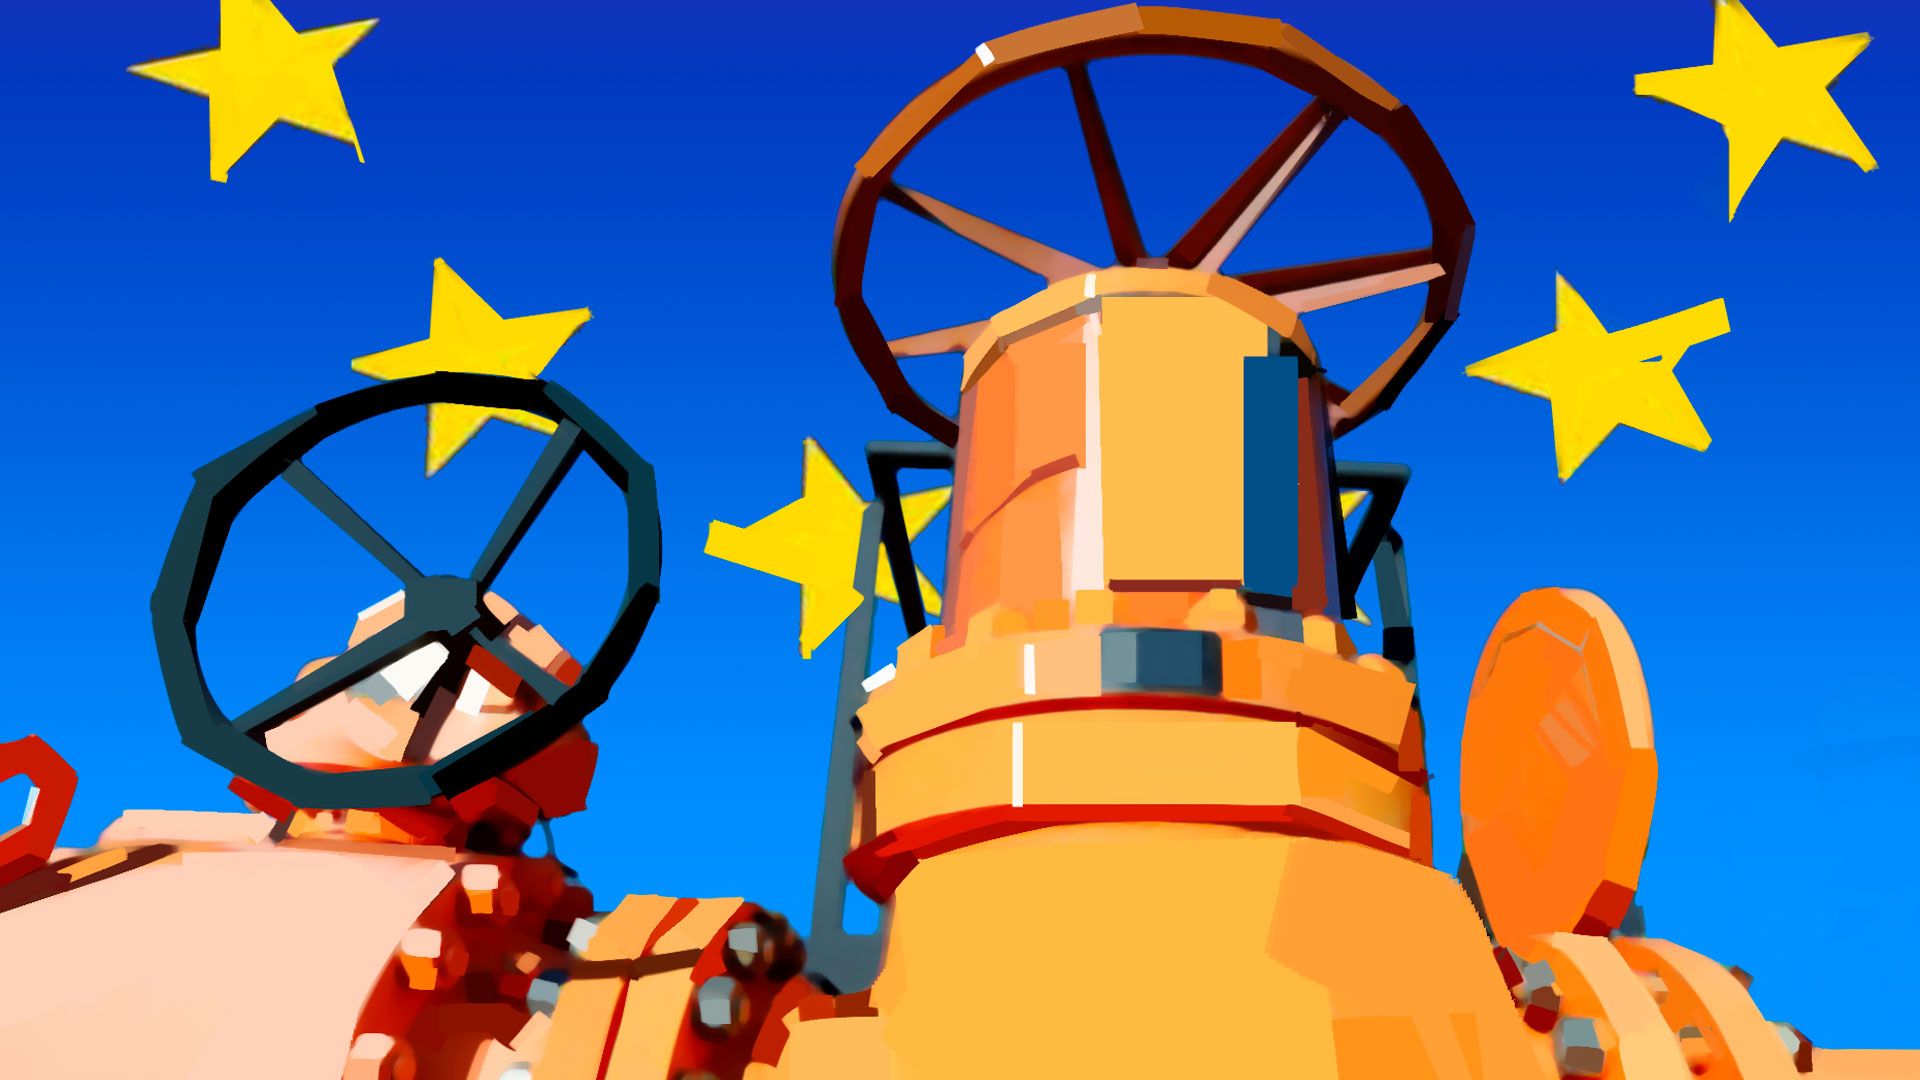 Еврокомиссар Симсон: текущие цены на газ позволят промышленности выжить